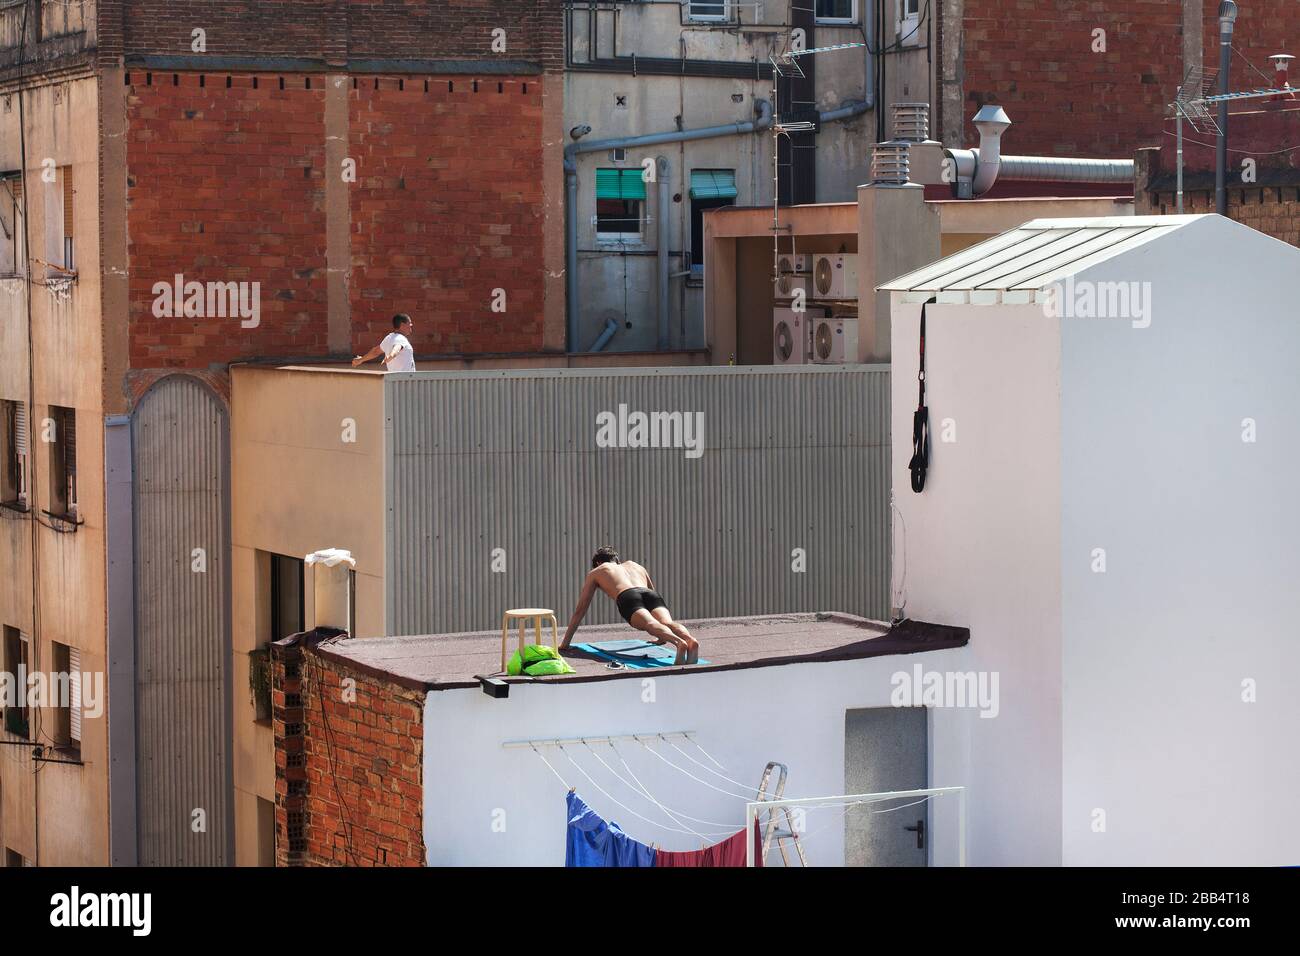 Deux hommes s'exercent sur leurs terrasses respectives sur le toit pendant la deuxième semaine de maintien à Barcelone, en Espagne. Banque D'Images